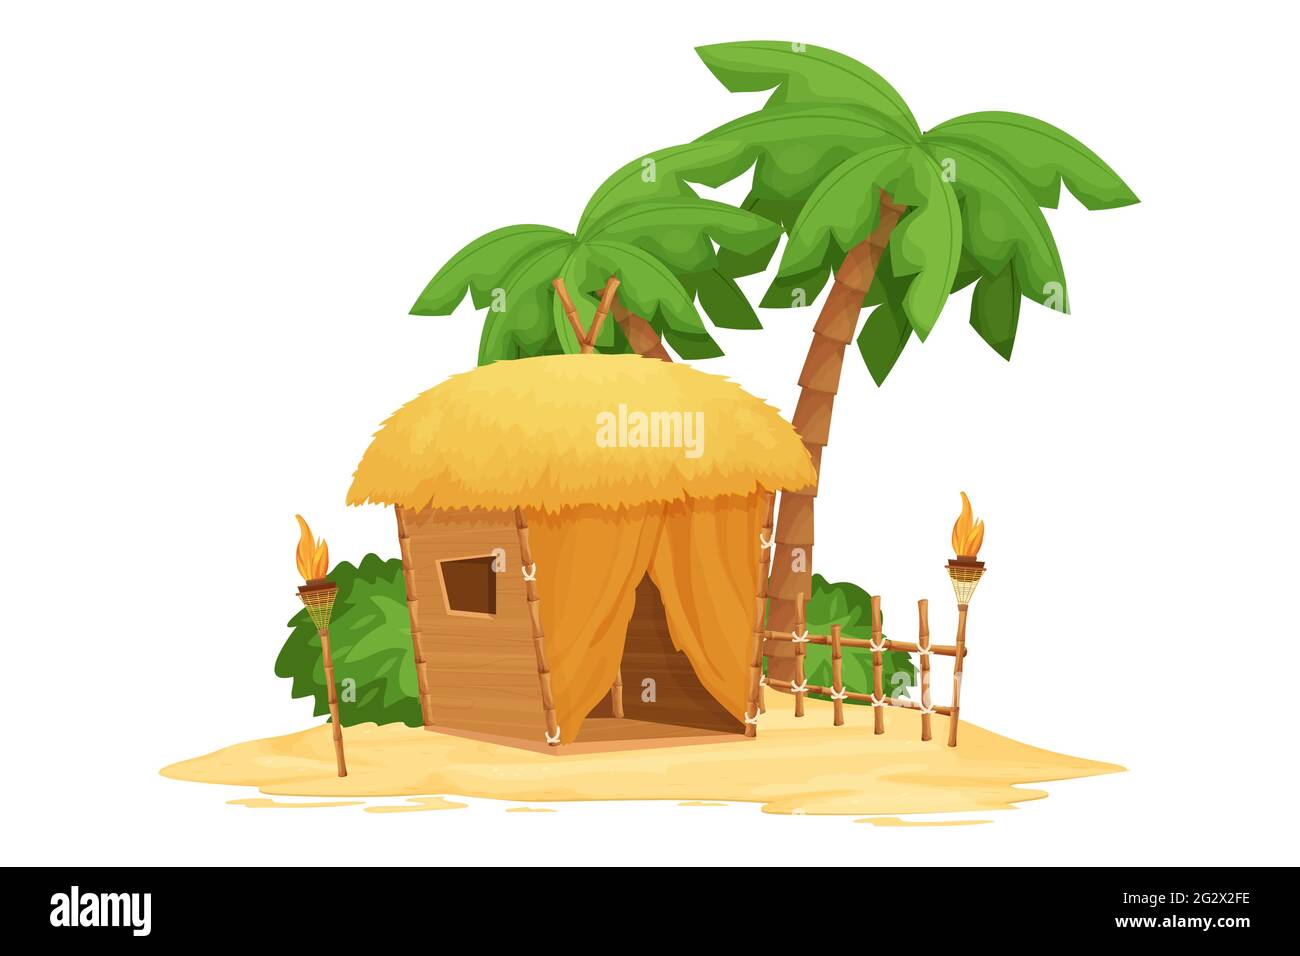 Strandbungalow, Tiki-Hütte mit Strohdach, Bambus- und Holzdetails auf Sand im Cartoon-Stil isoliert auf weißem Hintergrund. Fantasy-Gebäude mit Palmen Stock Vektor